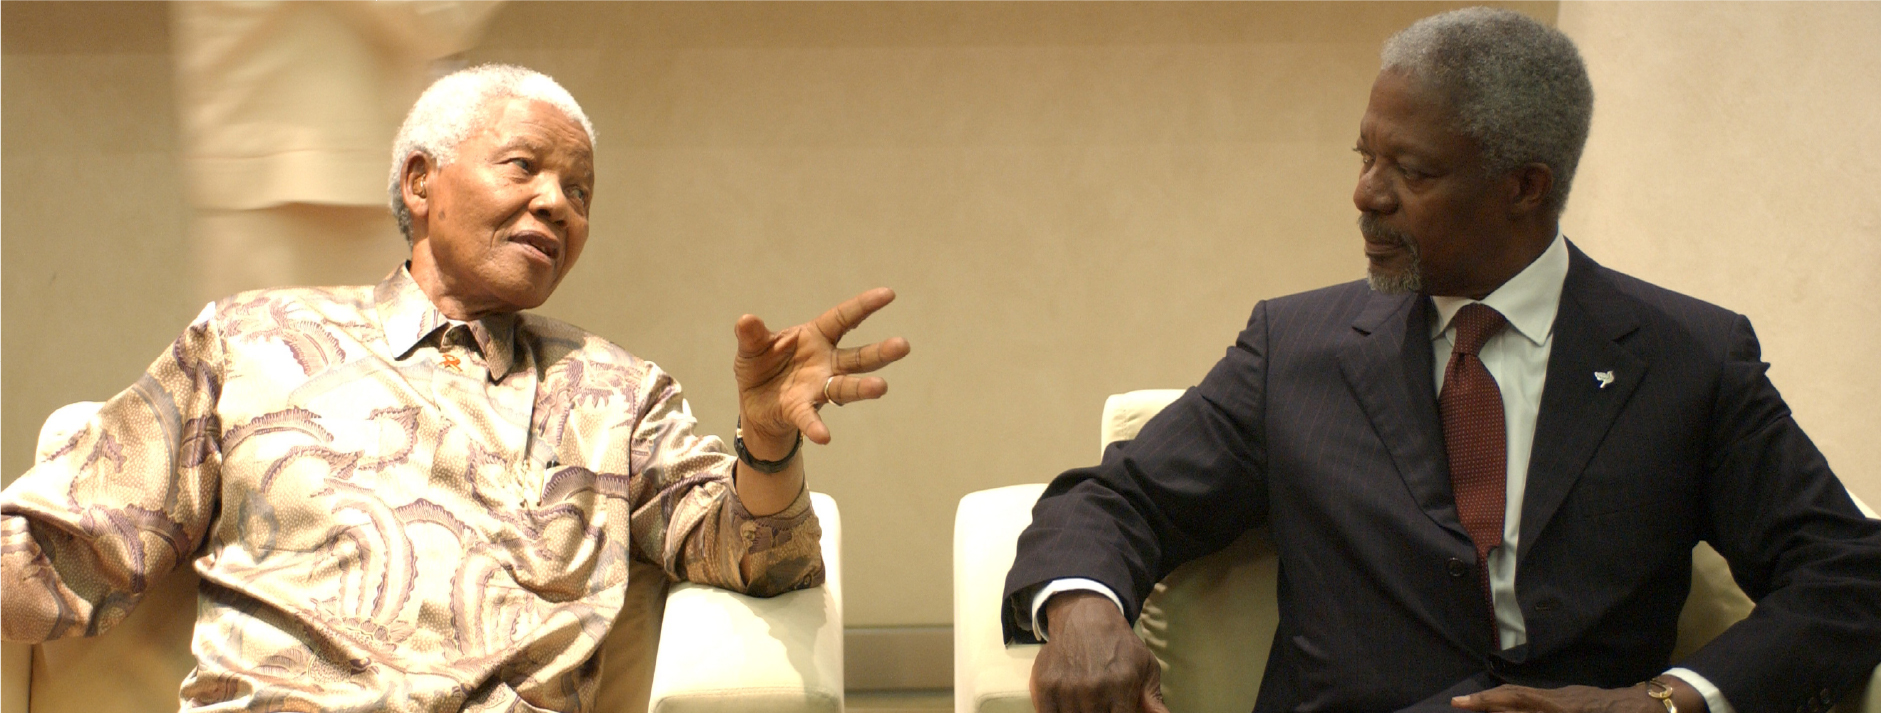 El Secretario General de las Naciones Unidas, Kofi Annan (derecha), con Nelson Mandela durante la Cumbre Mundial sobre el Desarrollo Sostenible.